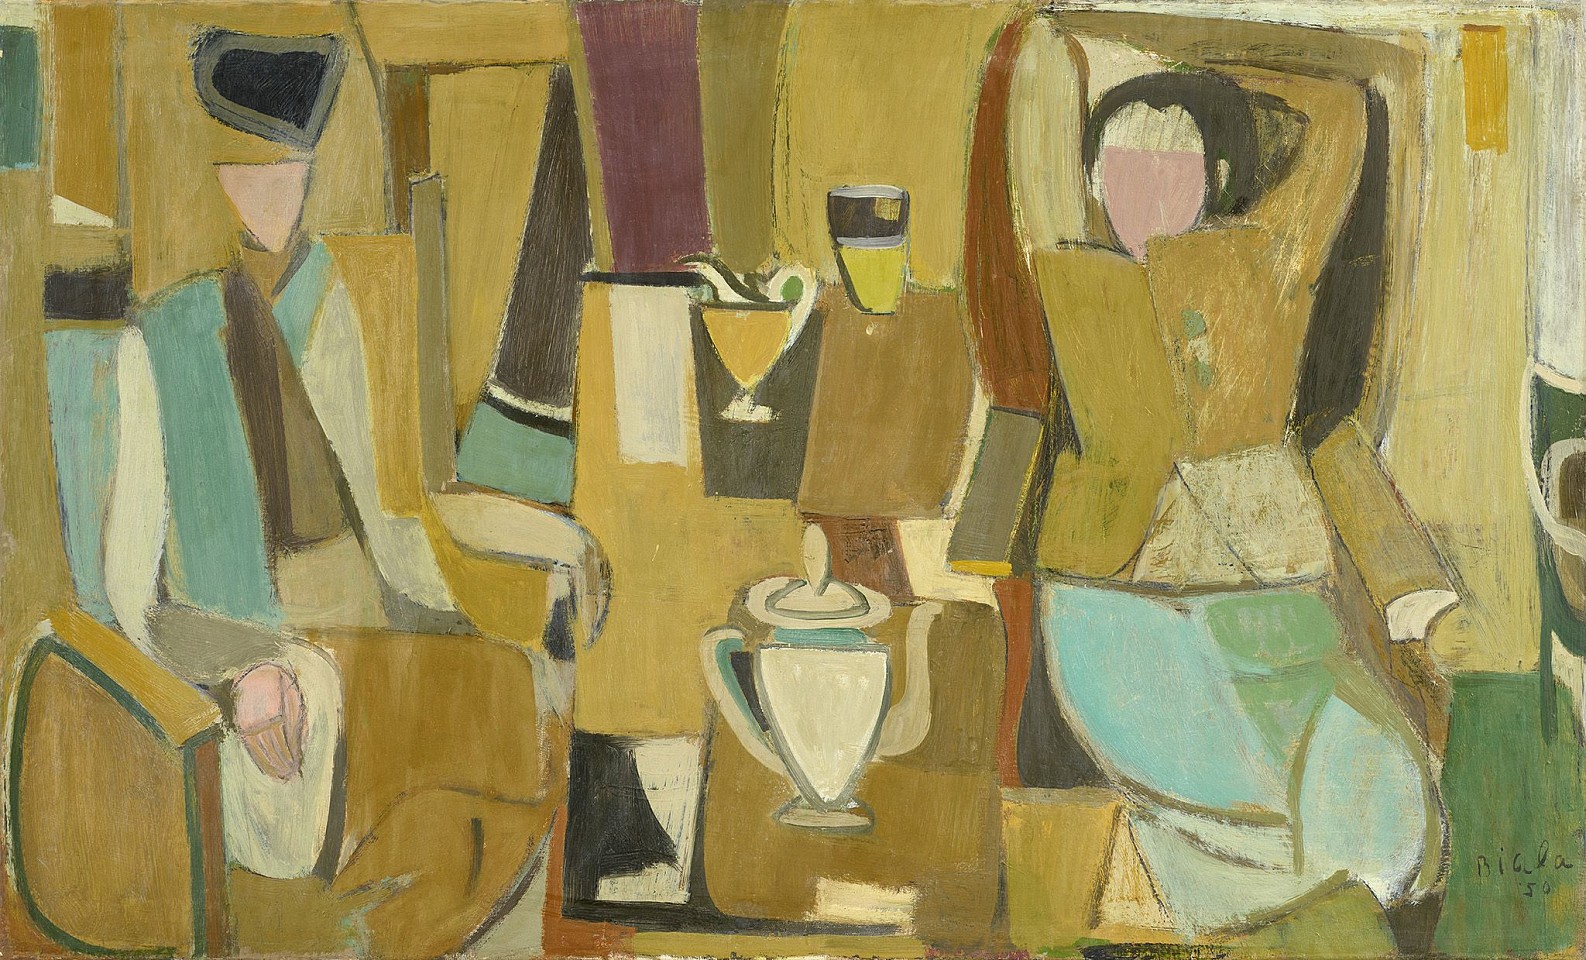 Janice Biala, Deux femmes et théière, 1950
Oil on canvas, 23 3/4 x 39 1/2 in. (60.3 x 100.3 cm)
BIAL-00041